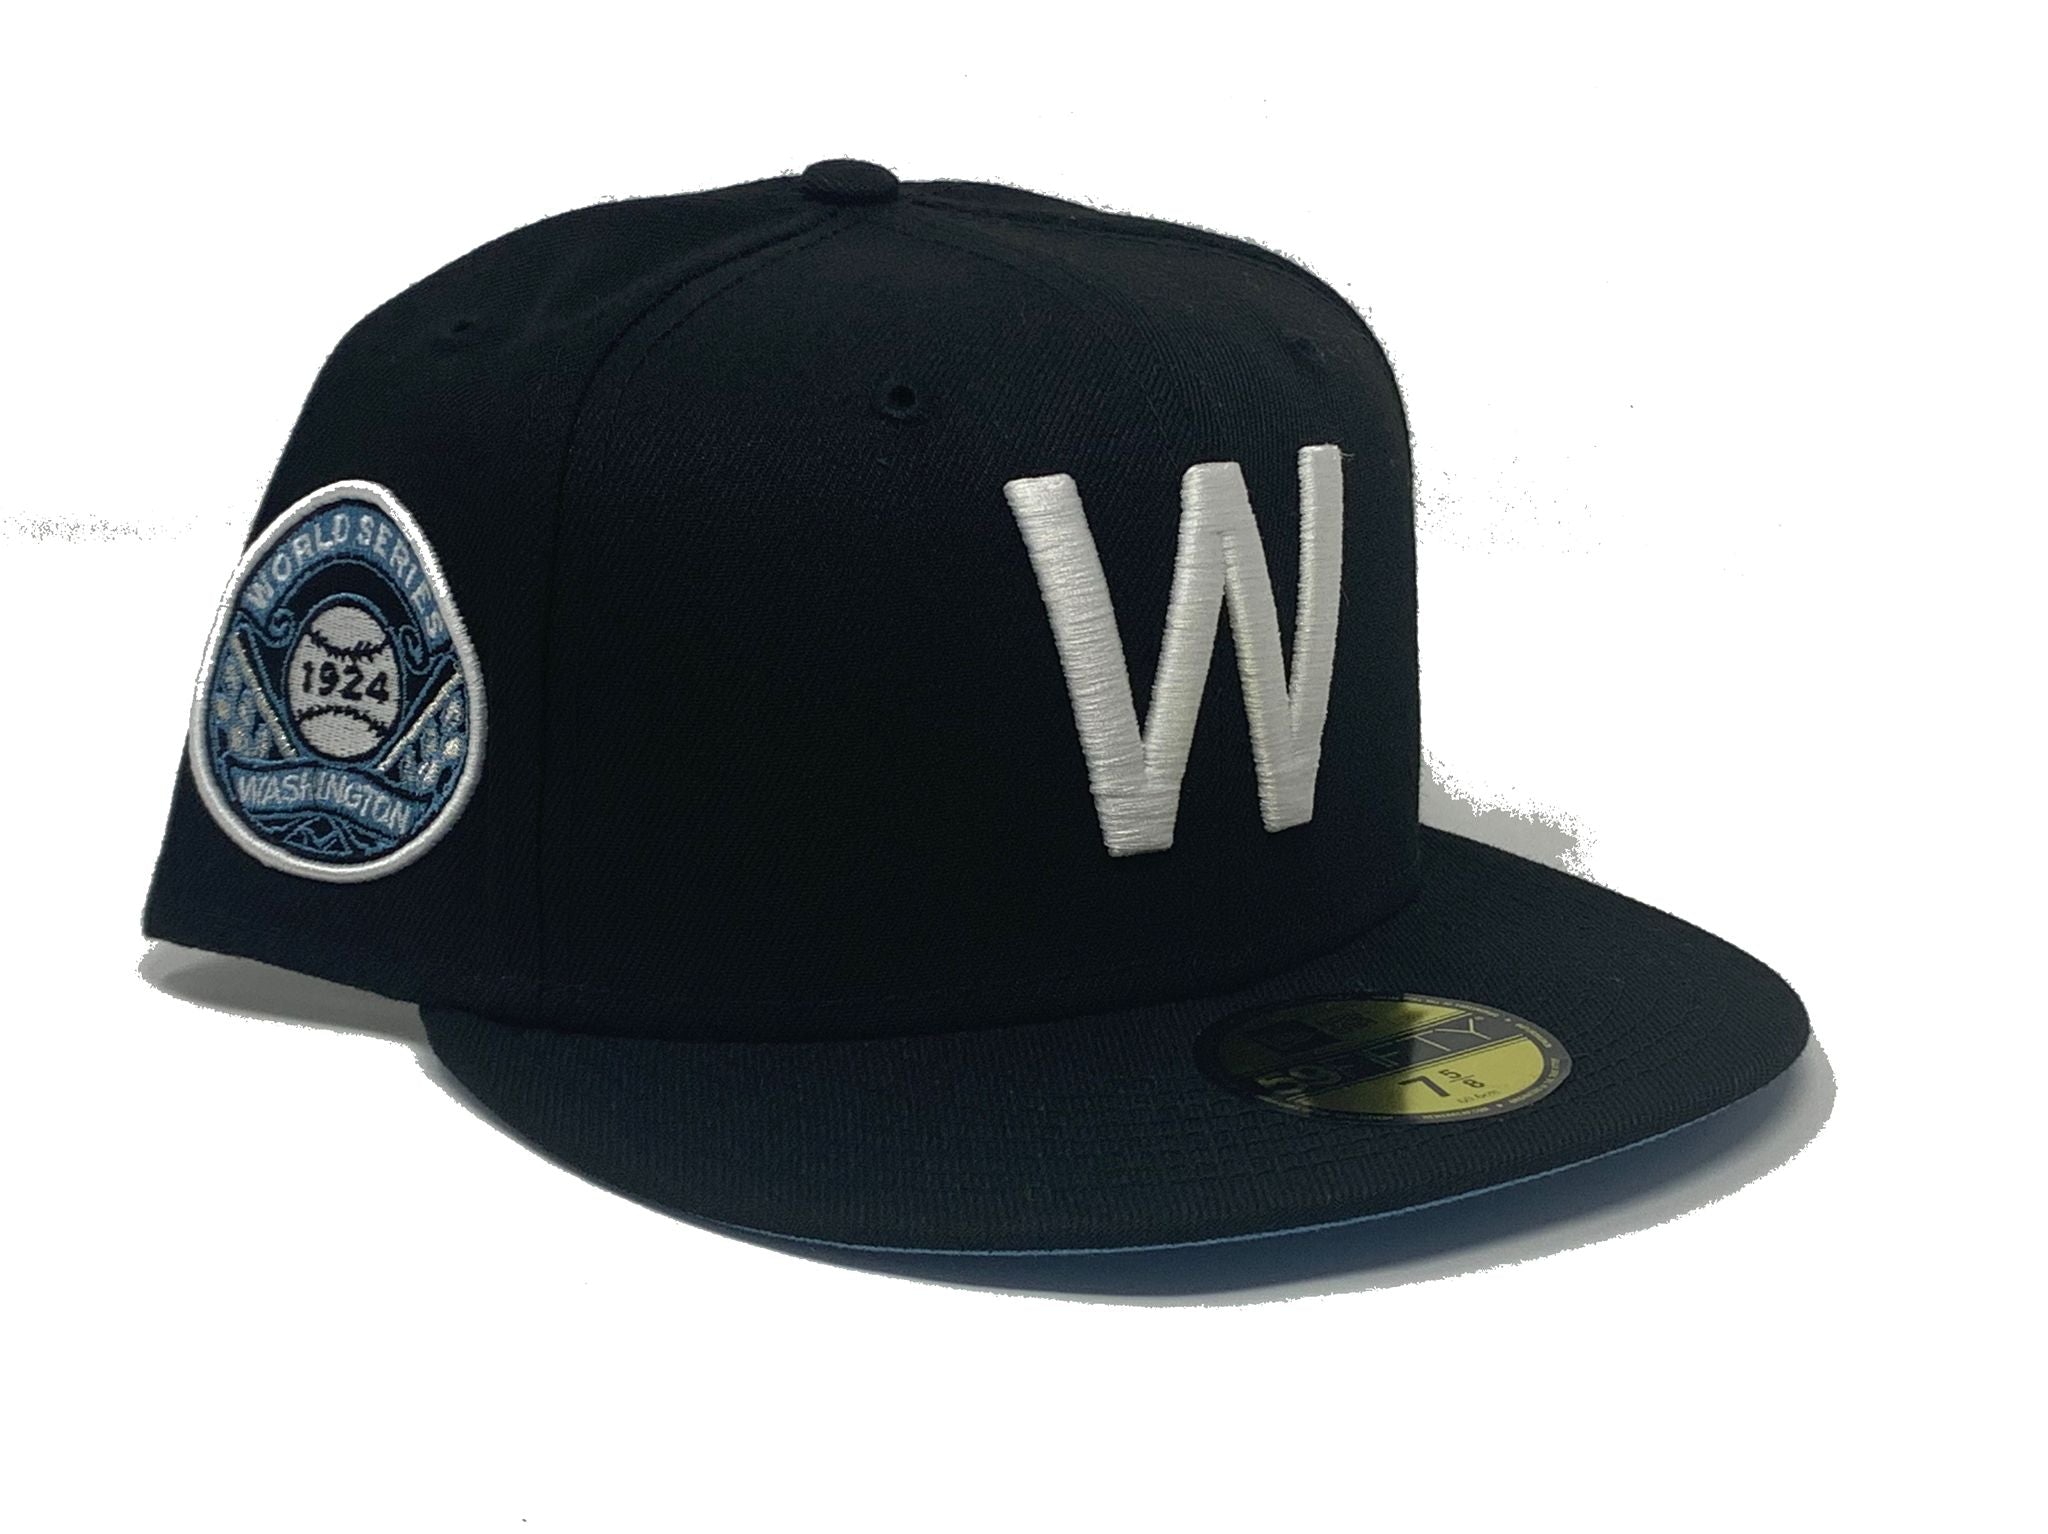 NWOT Washington Senators MLB New Era Size 7 3/4 Fitted Hat 9 Fifty Pinstripe